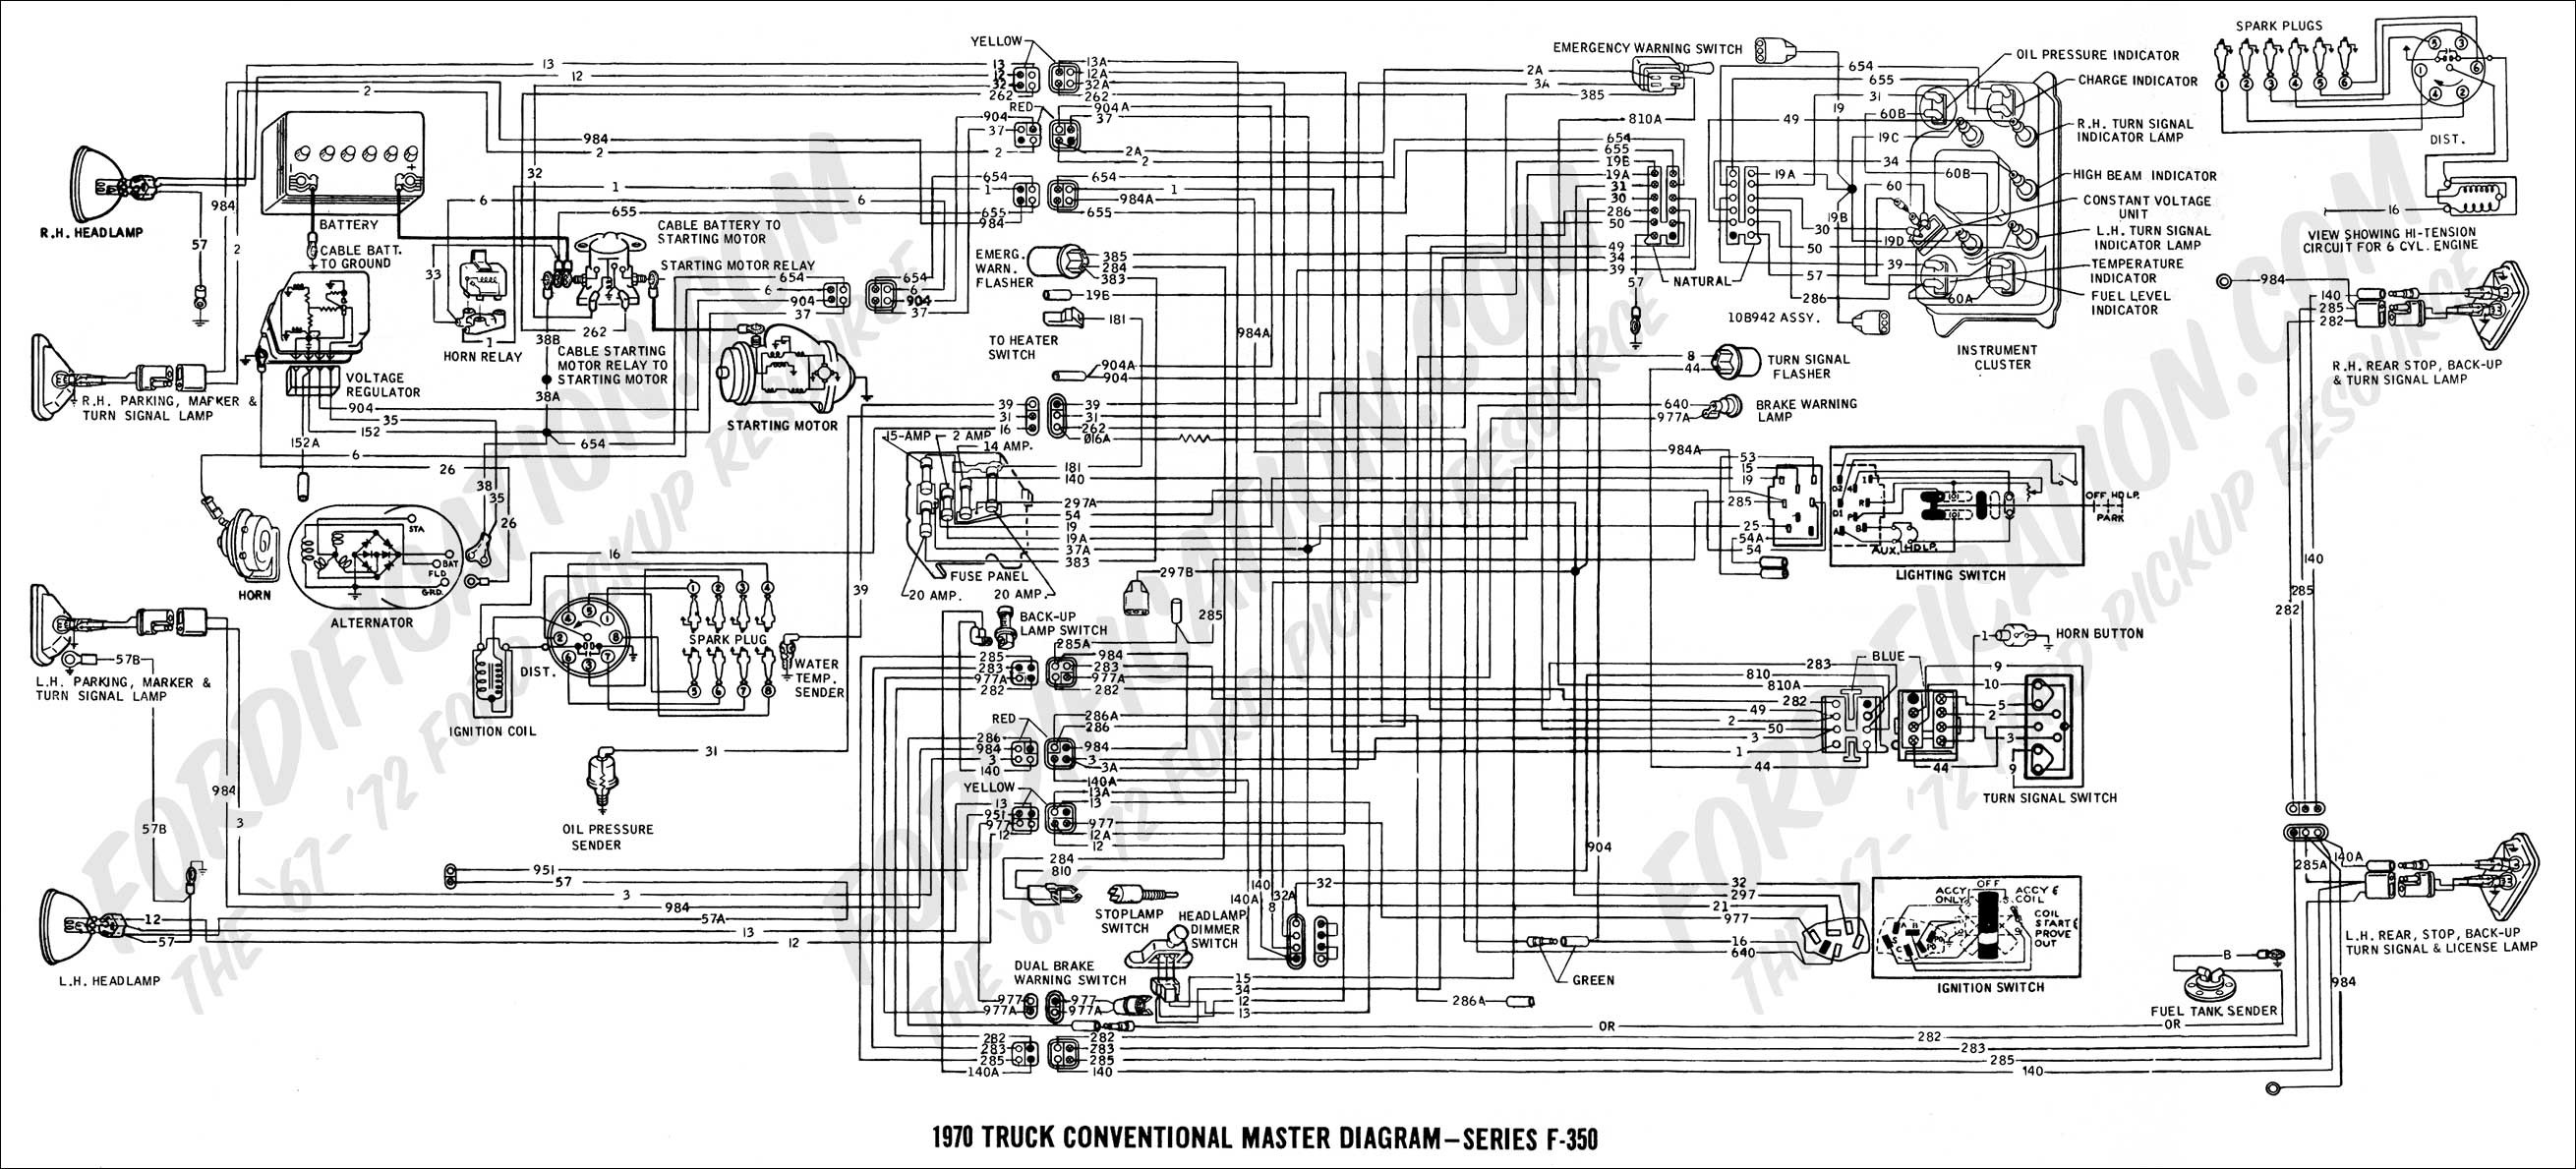 70 bronco wiring diagram free image about wiring diagram rh wuzzie co 2003 Saturn Vue